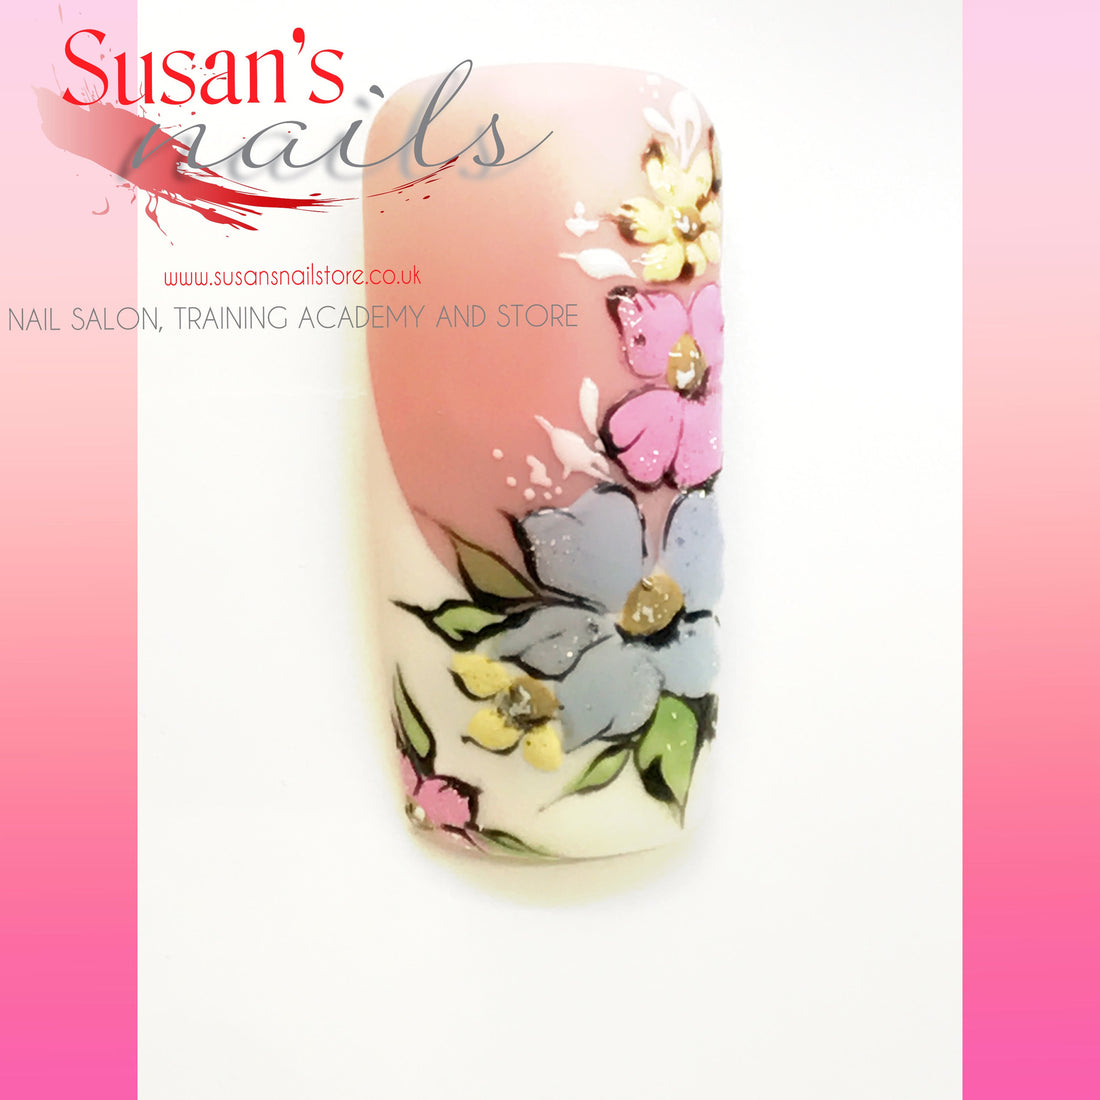 Nail Art: A Florist’s Bouquet - Adorn your clients’ nails with colourful, petite pastel flowers